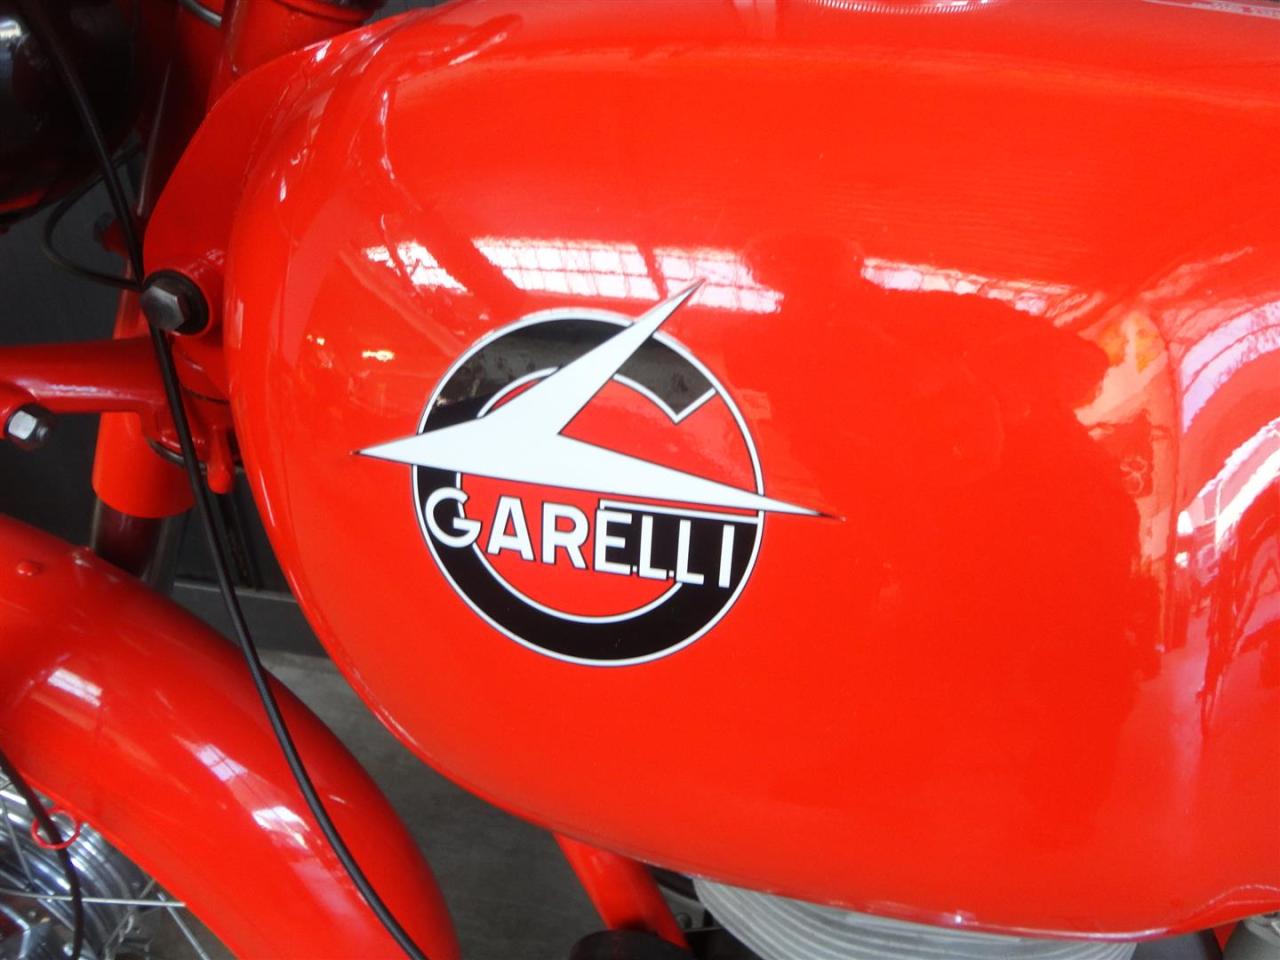 1960 Garelli Motoleggra